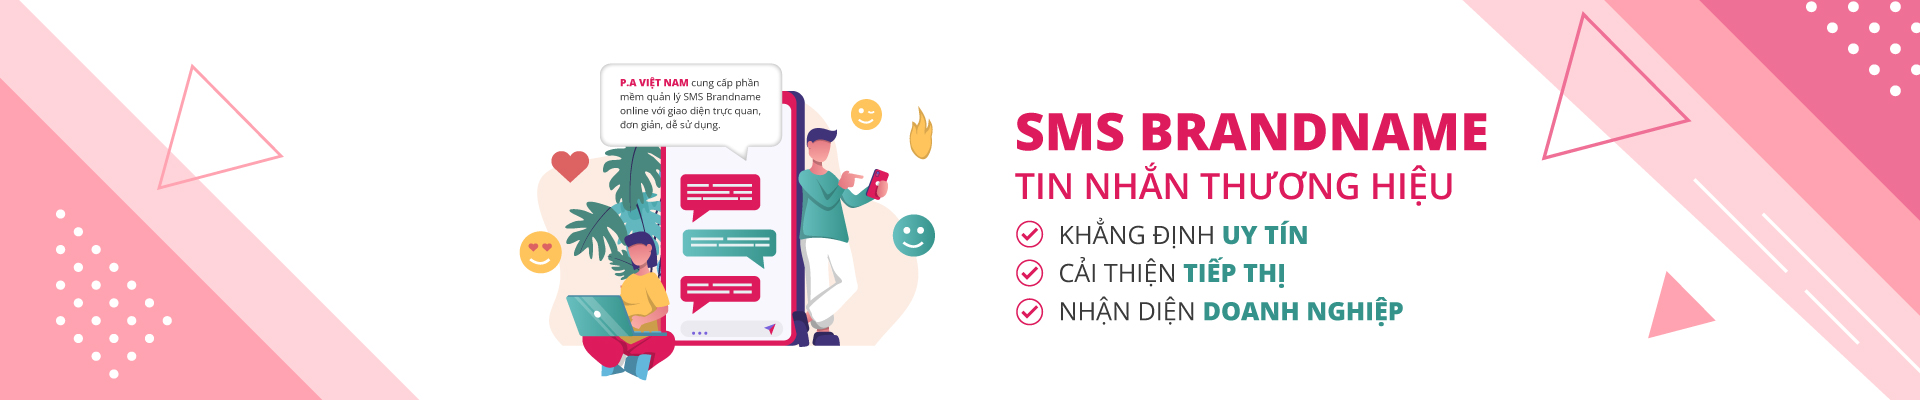 SMS Brandname - Tin nhắn thương hiệu